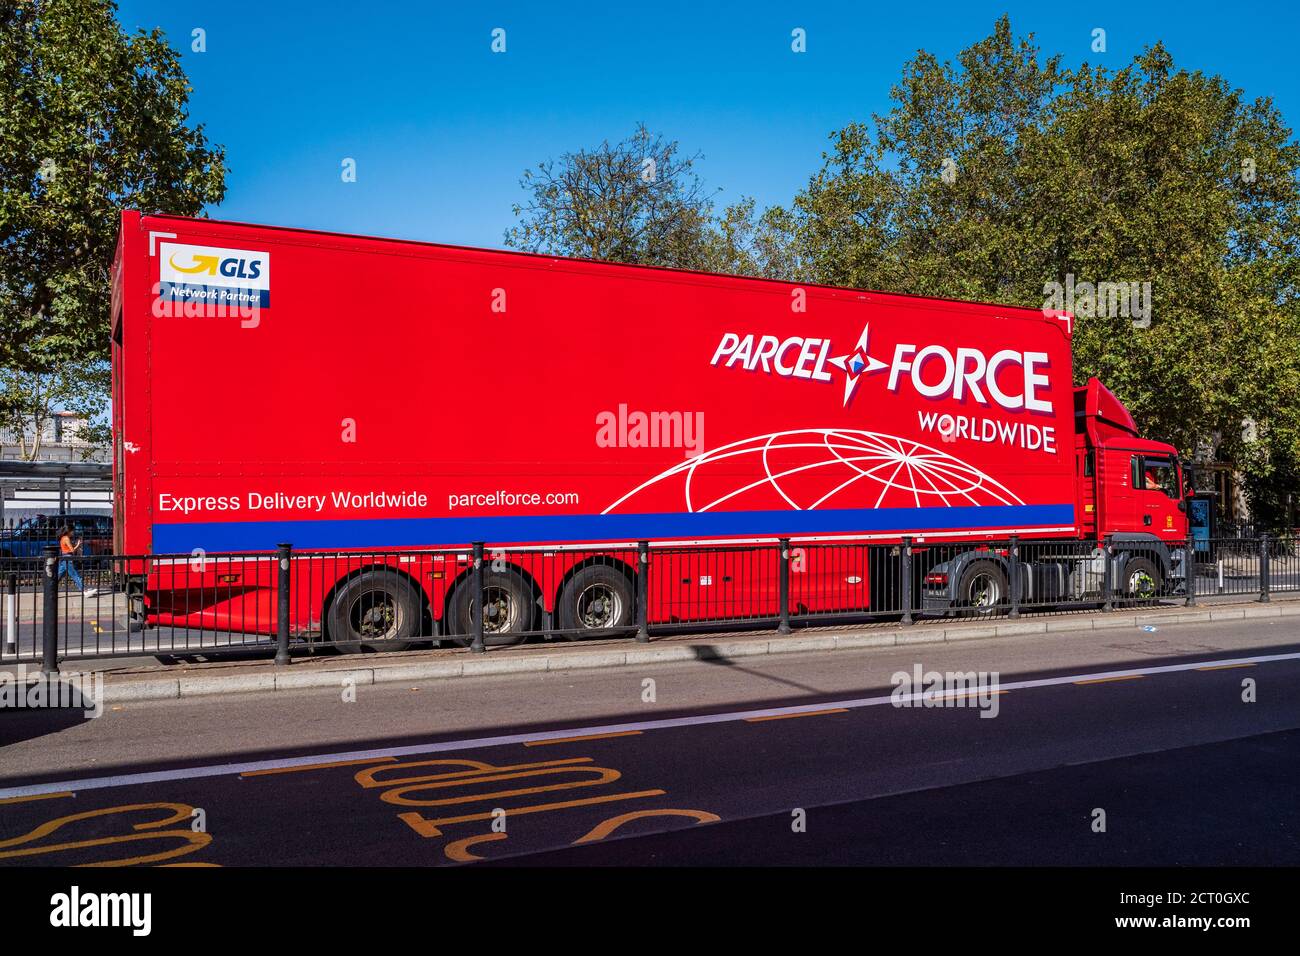 Camion Parcelforce ou camion Parcelforce dans le centre de Londres. Parcelforce Worldwide est une filiale de Royal Mail. Banque D'Images